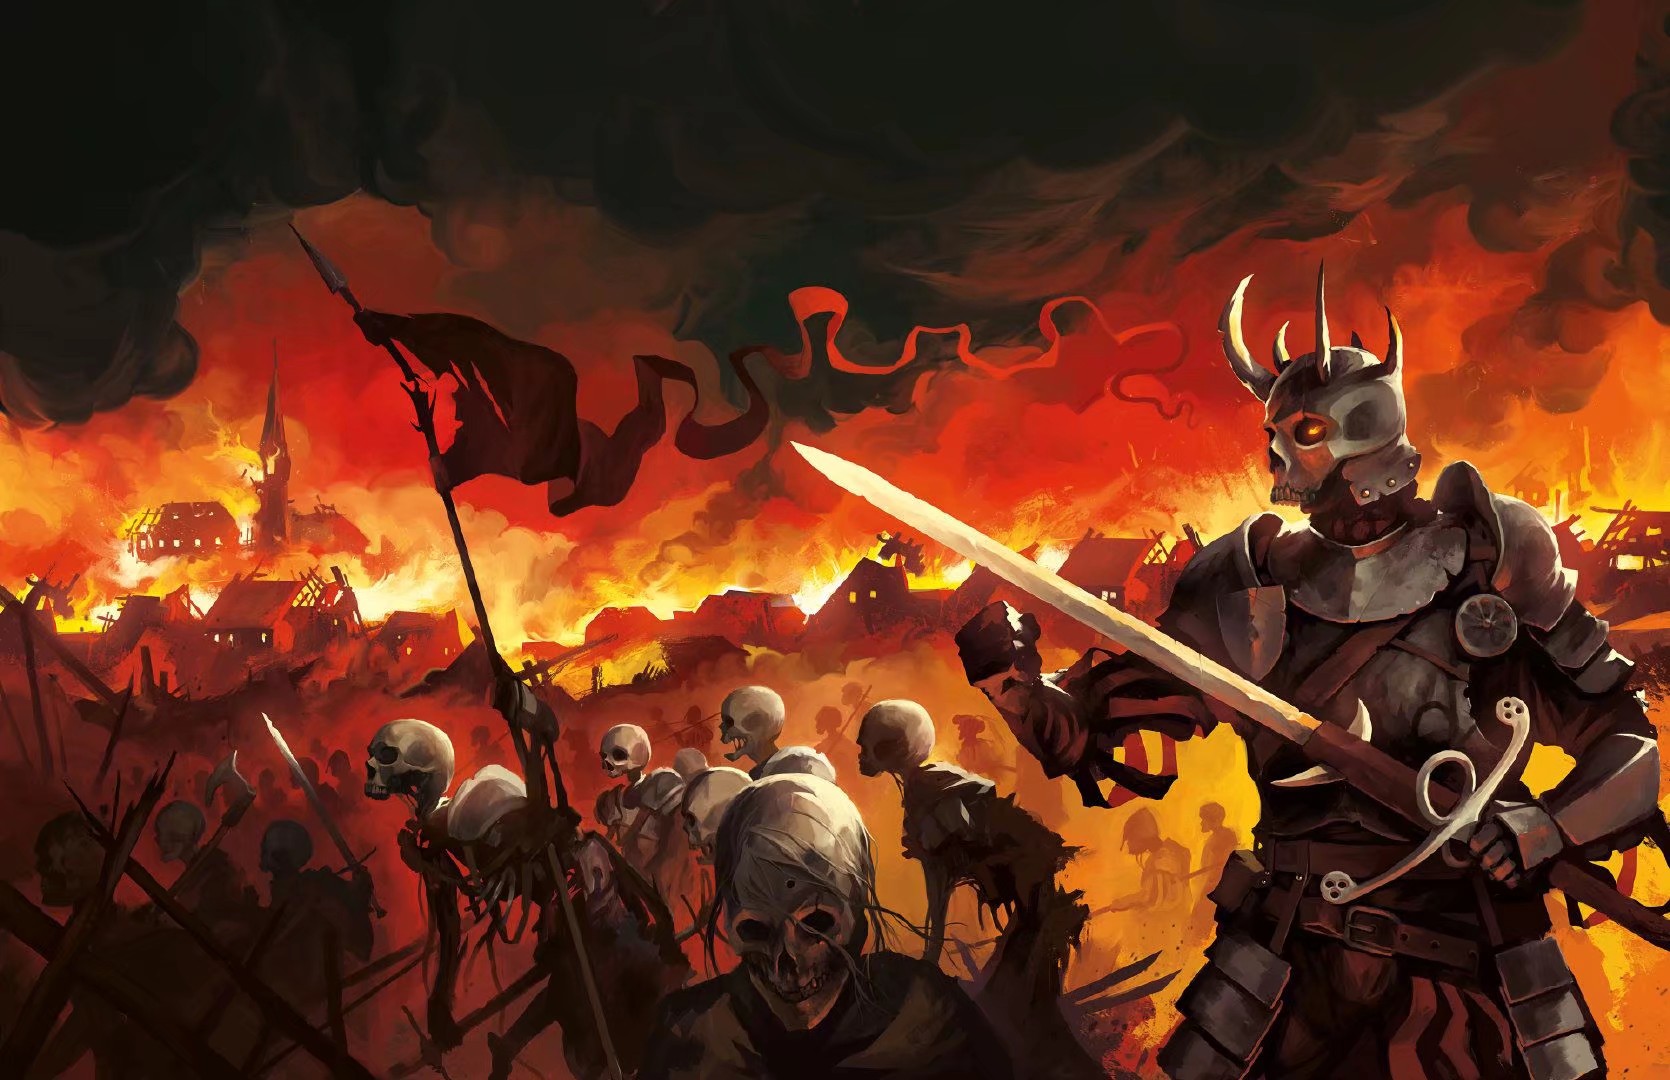 战场,概念插画,在红与黑中看到了悲壮和战血